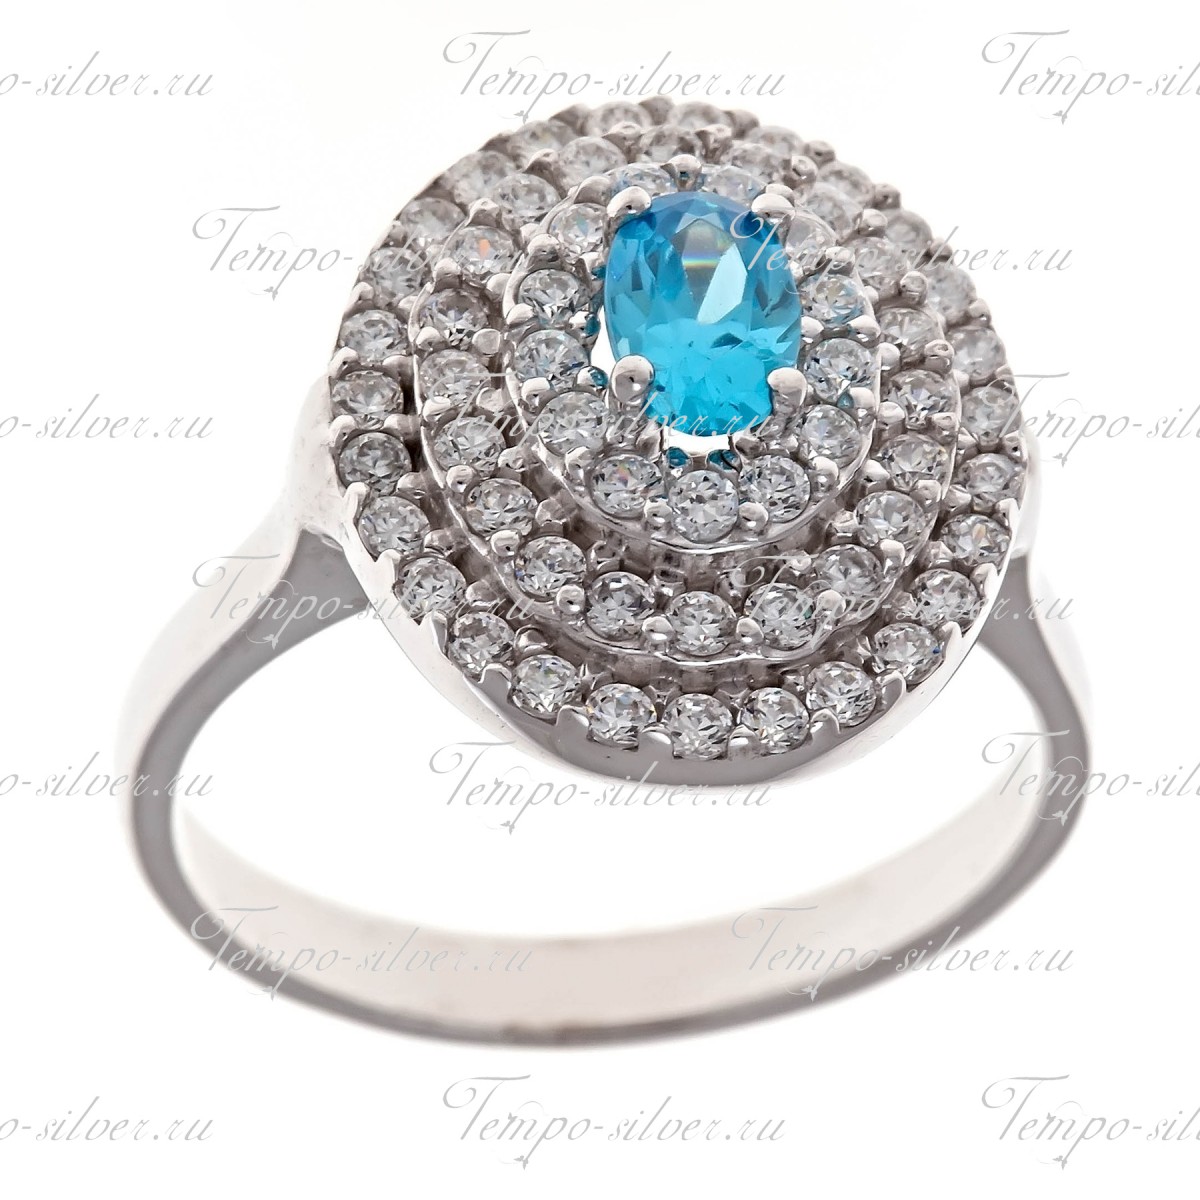 Кольцо серебряное овальной формы с голубым камнем цена